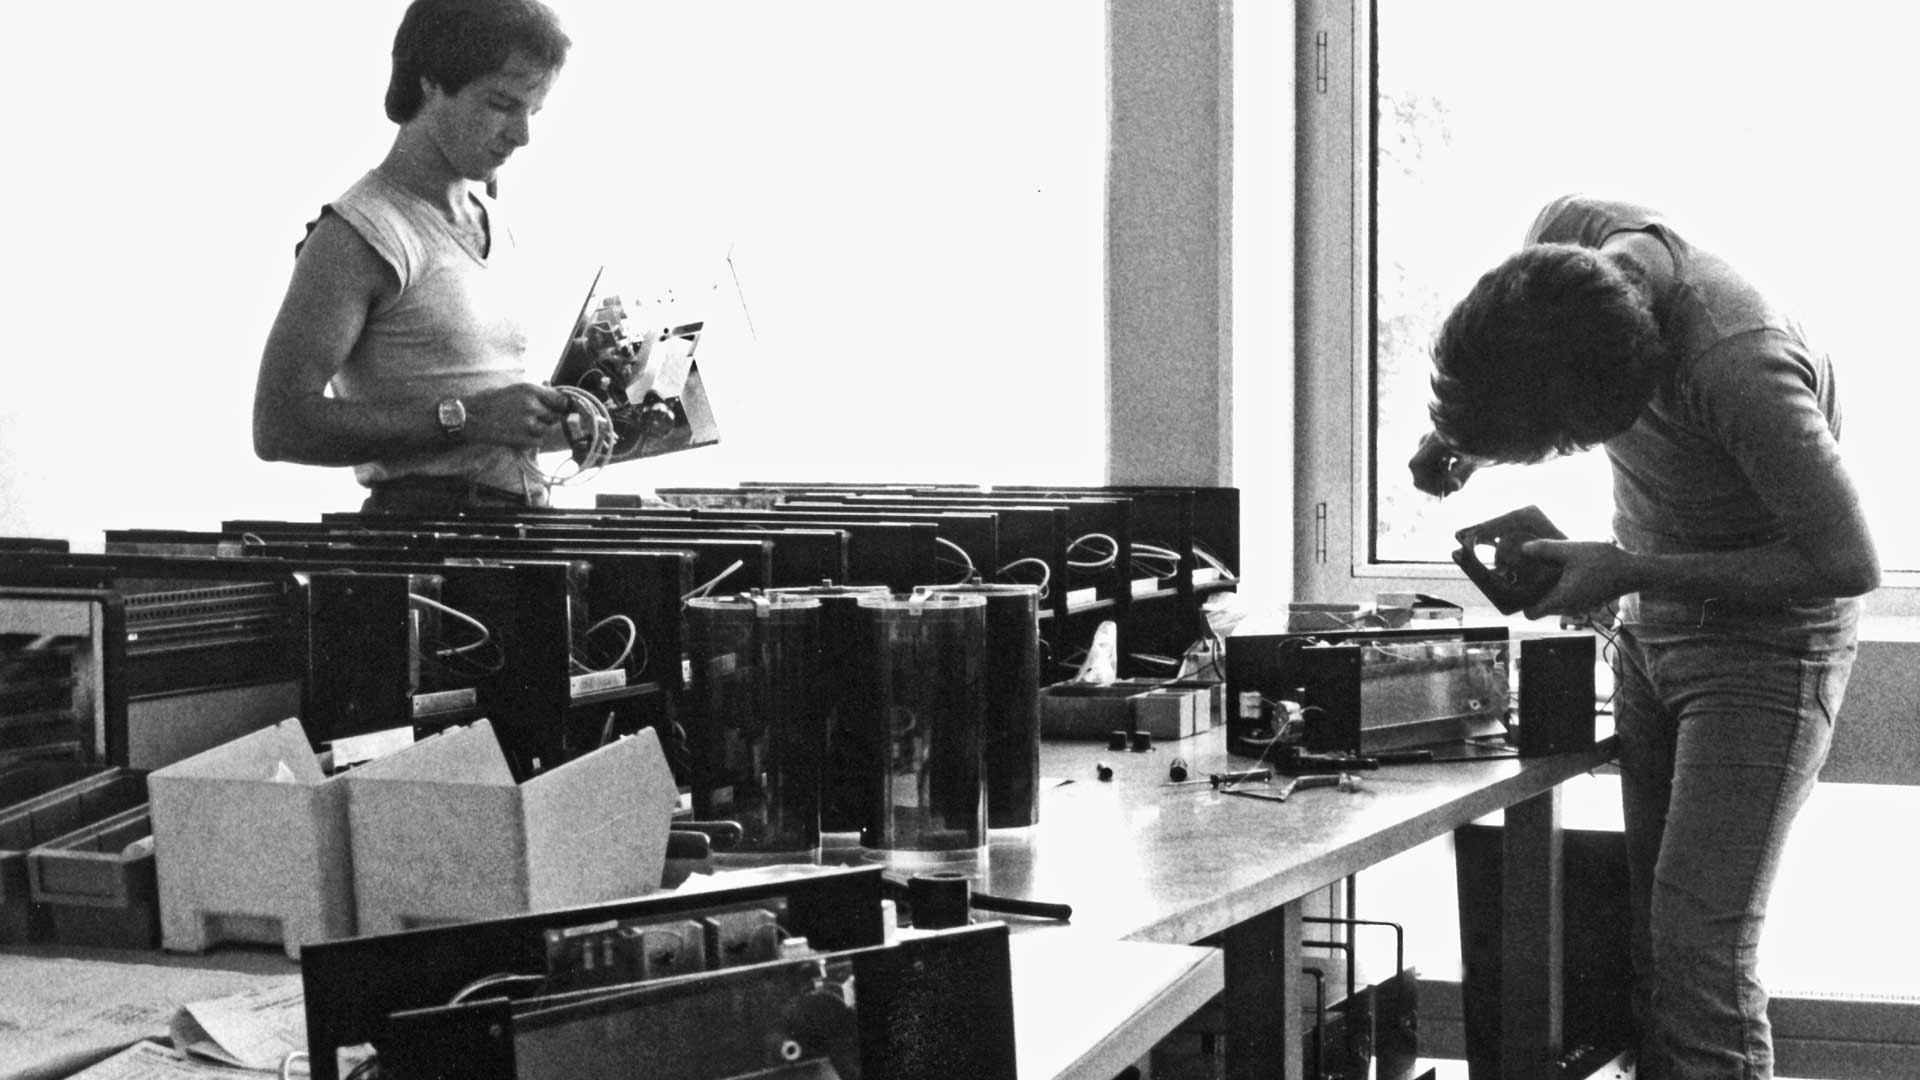 GS und Mitarbeiter bei der Herstellung eines von Stroboskopen.